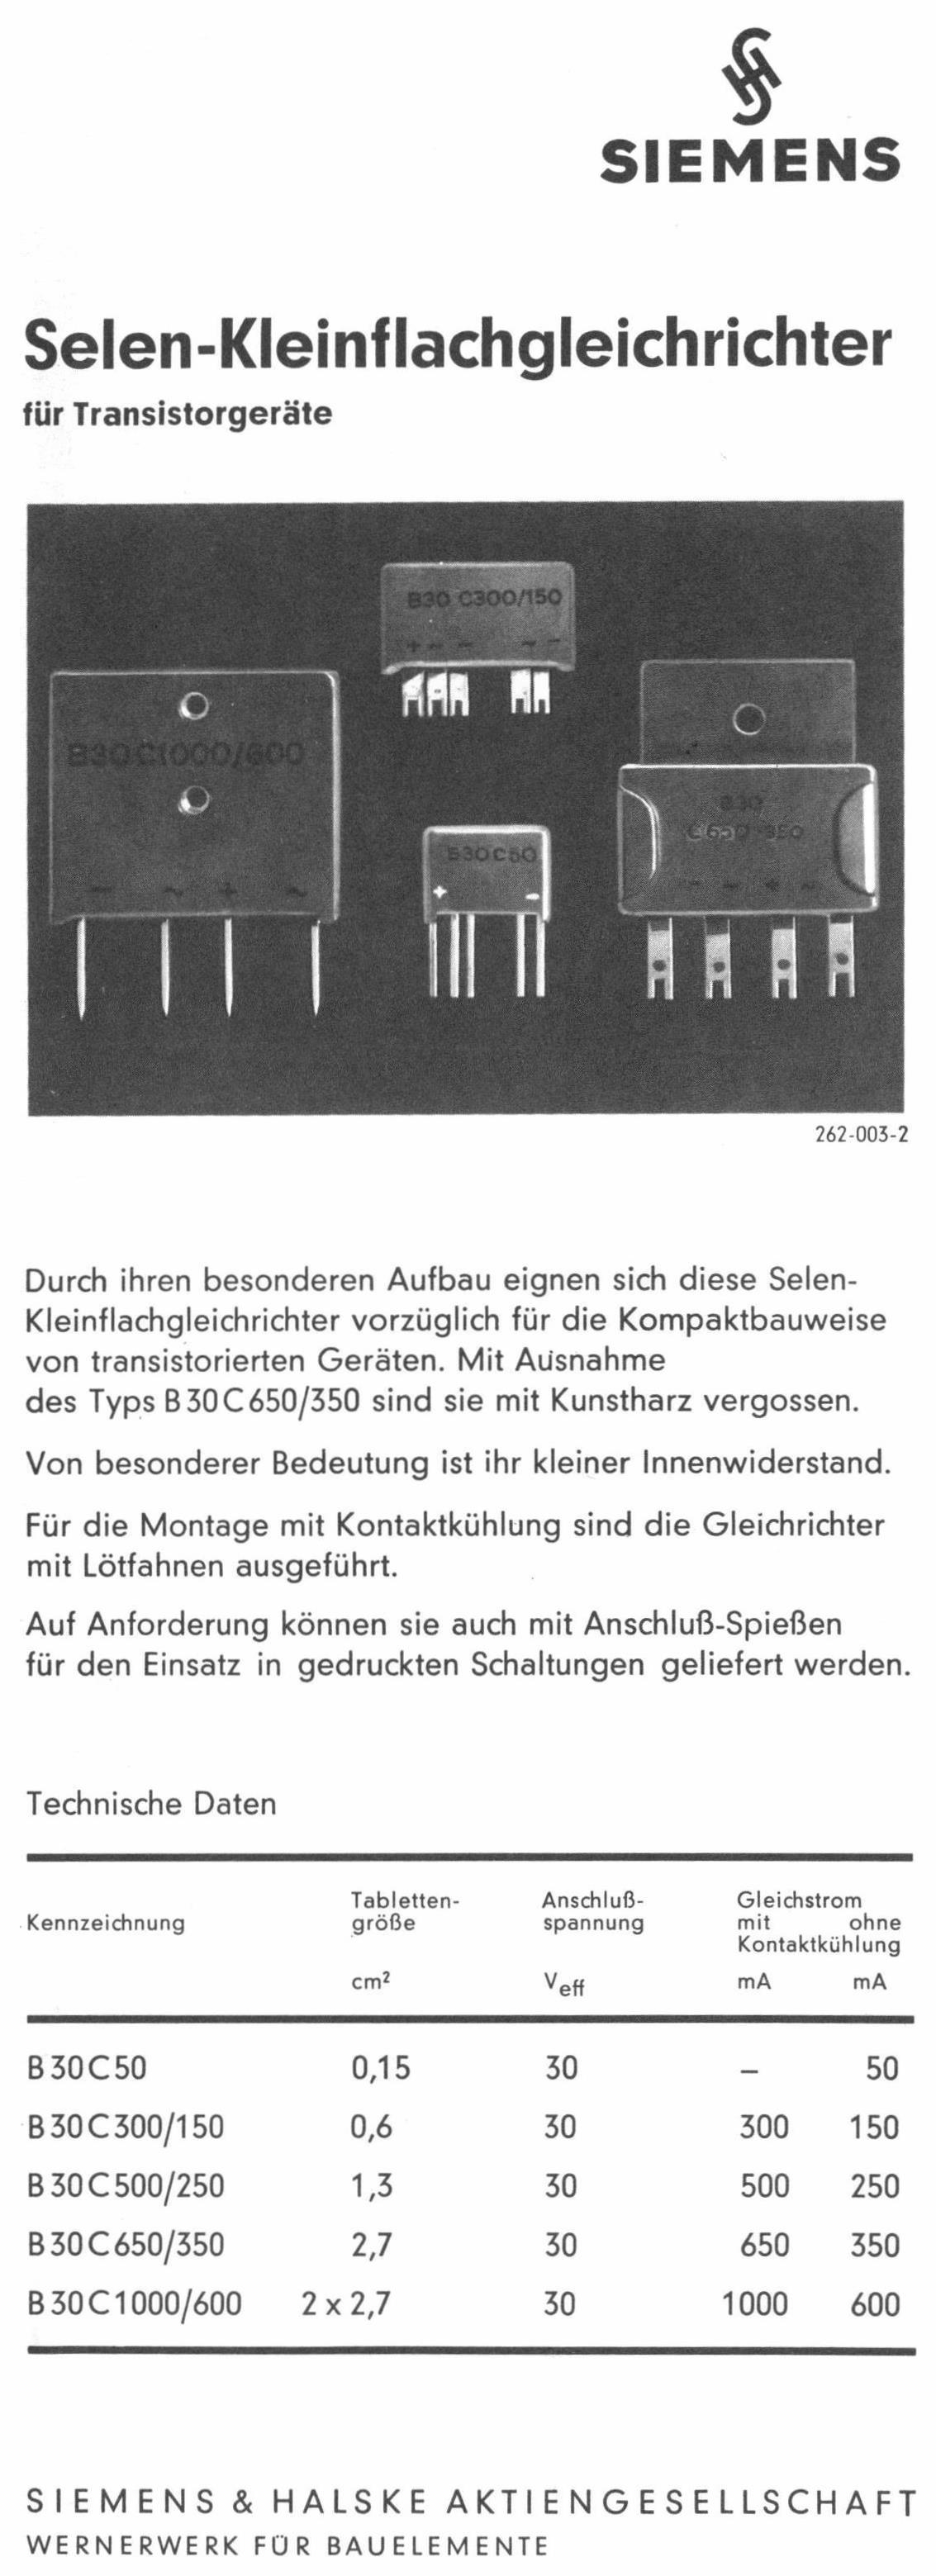 Siemens 1964 6.jpg